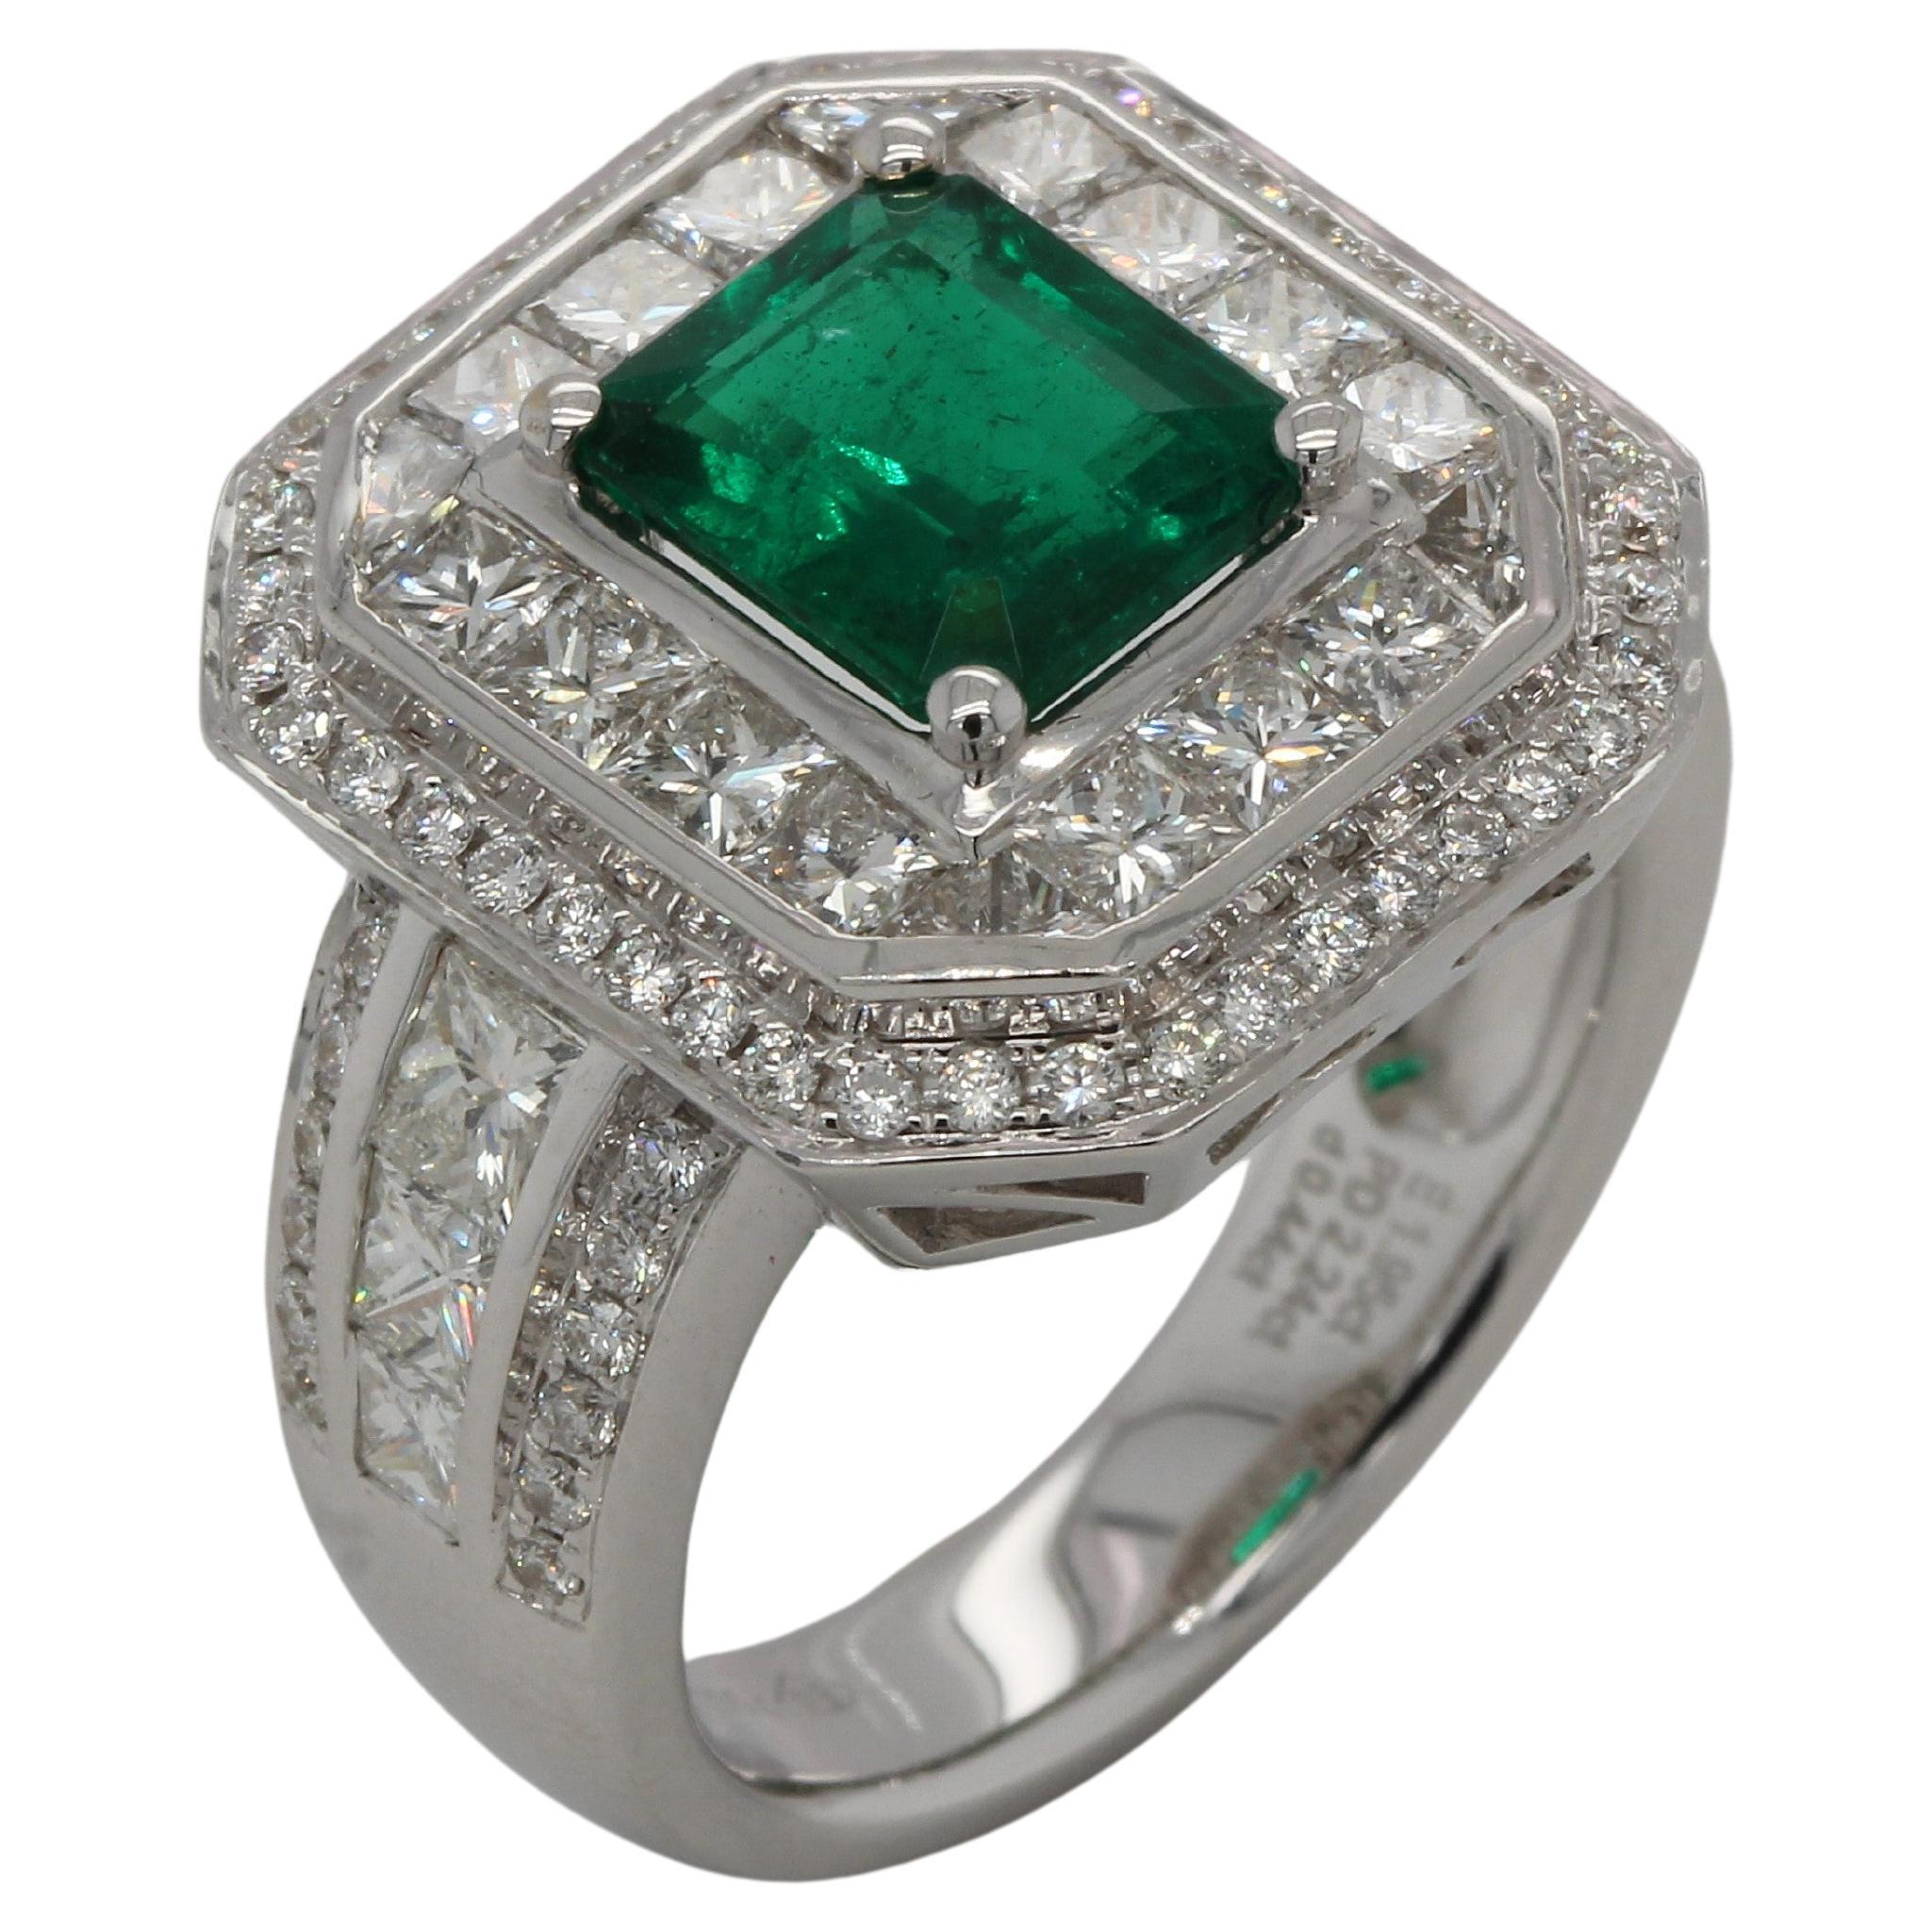 Dieser Smaragd- und Diamantring ist ein wahres Luxusobjekt. Mit seinem beeindruckenden 1,95-Karat-Smaragd, der mit funkelnden weißen Diamanten besetzt ist, ist er ein auffälliges Stück, mit dem Sie garantiert auffallen werden. Dieser exklusive Ring